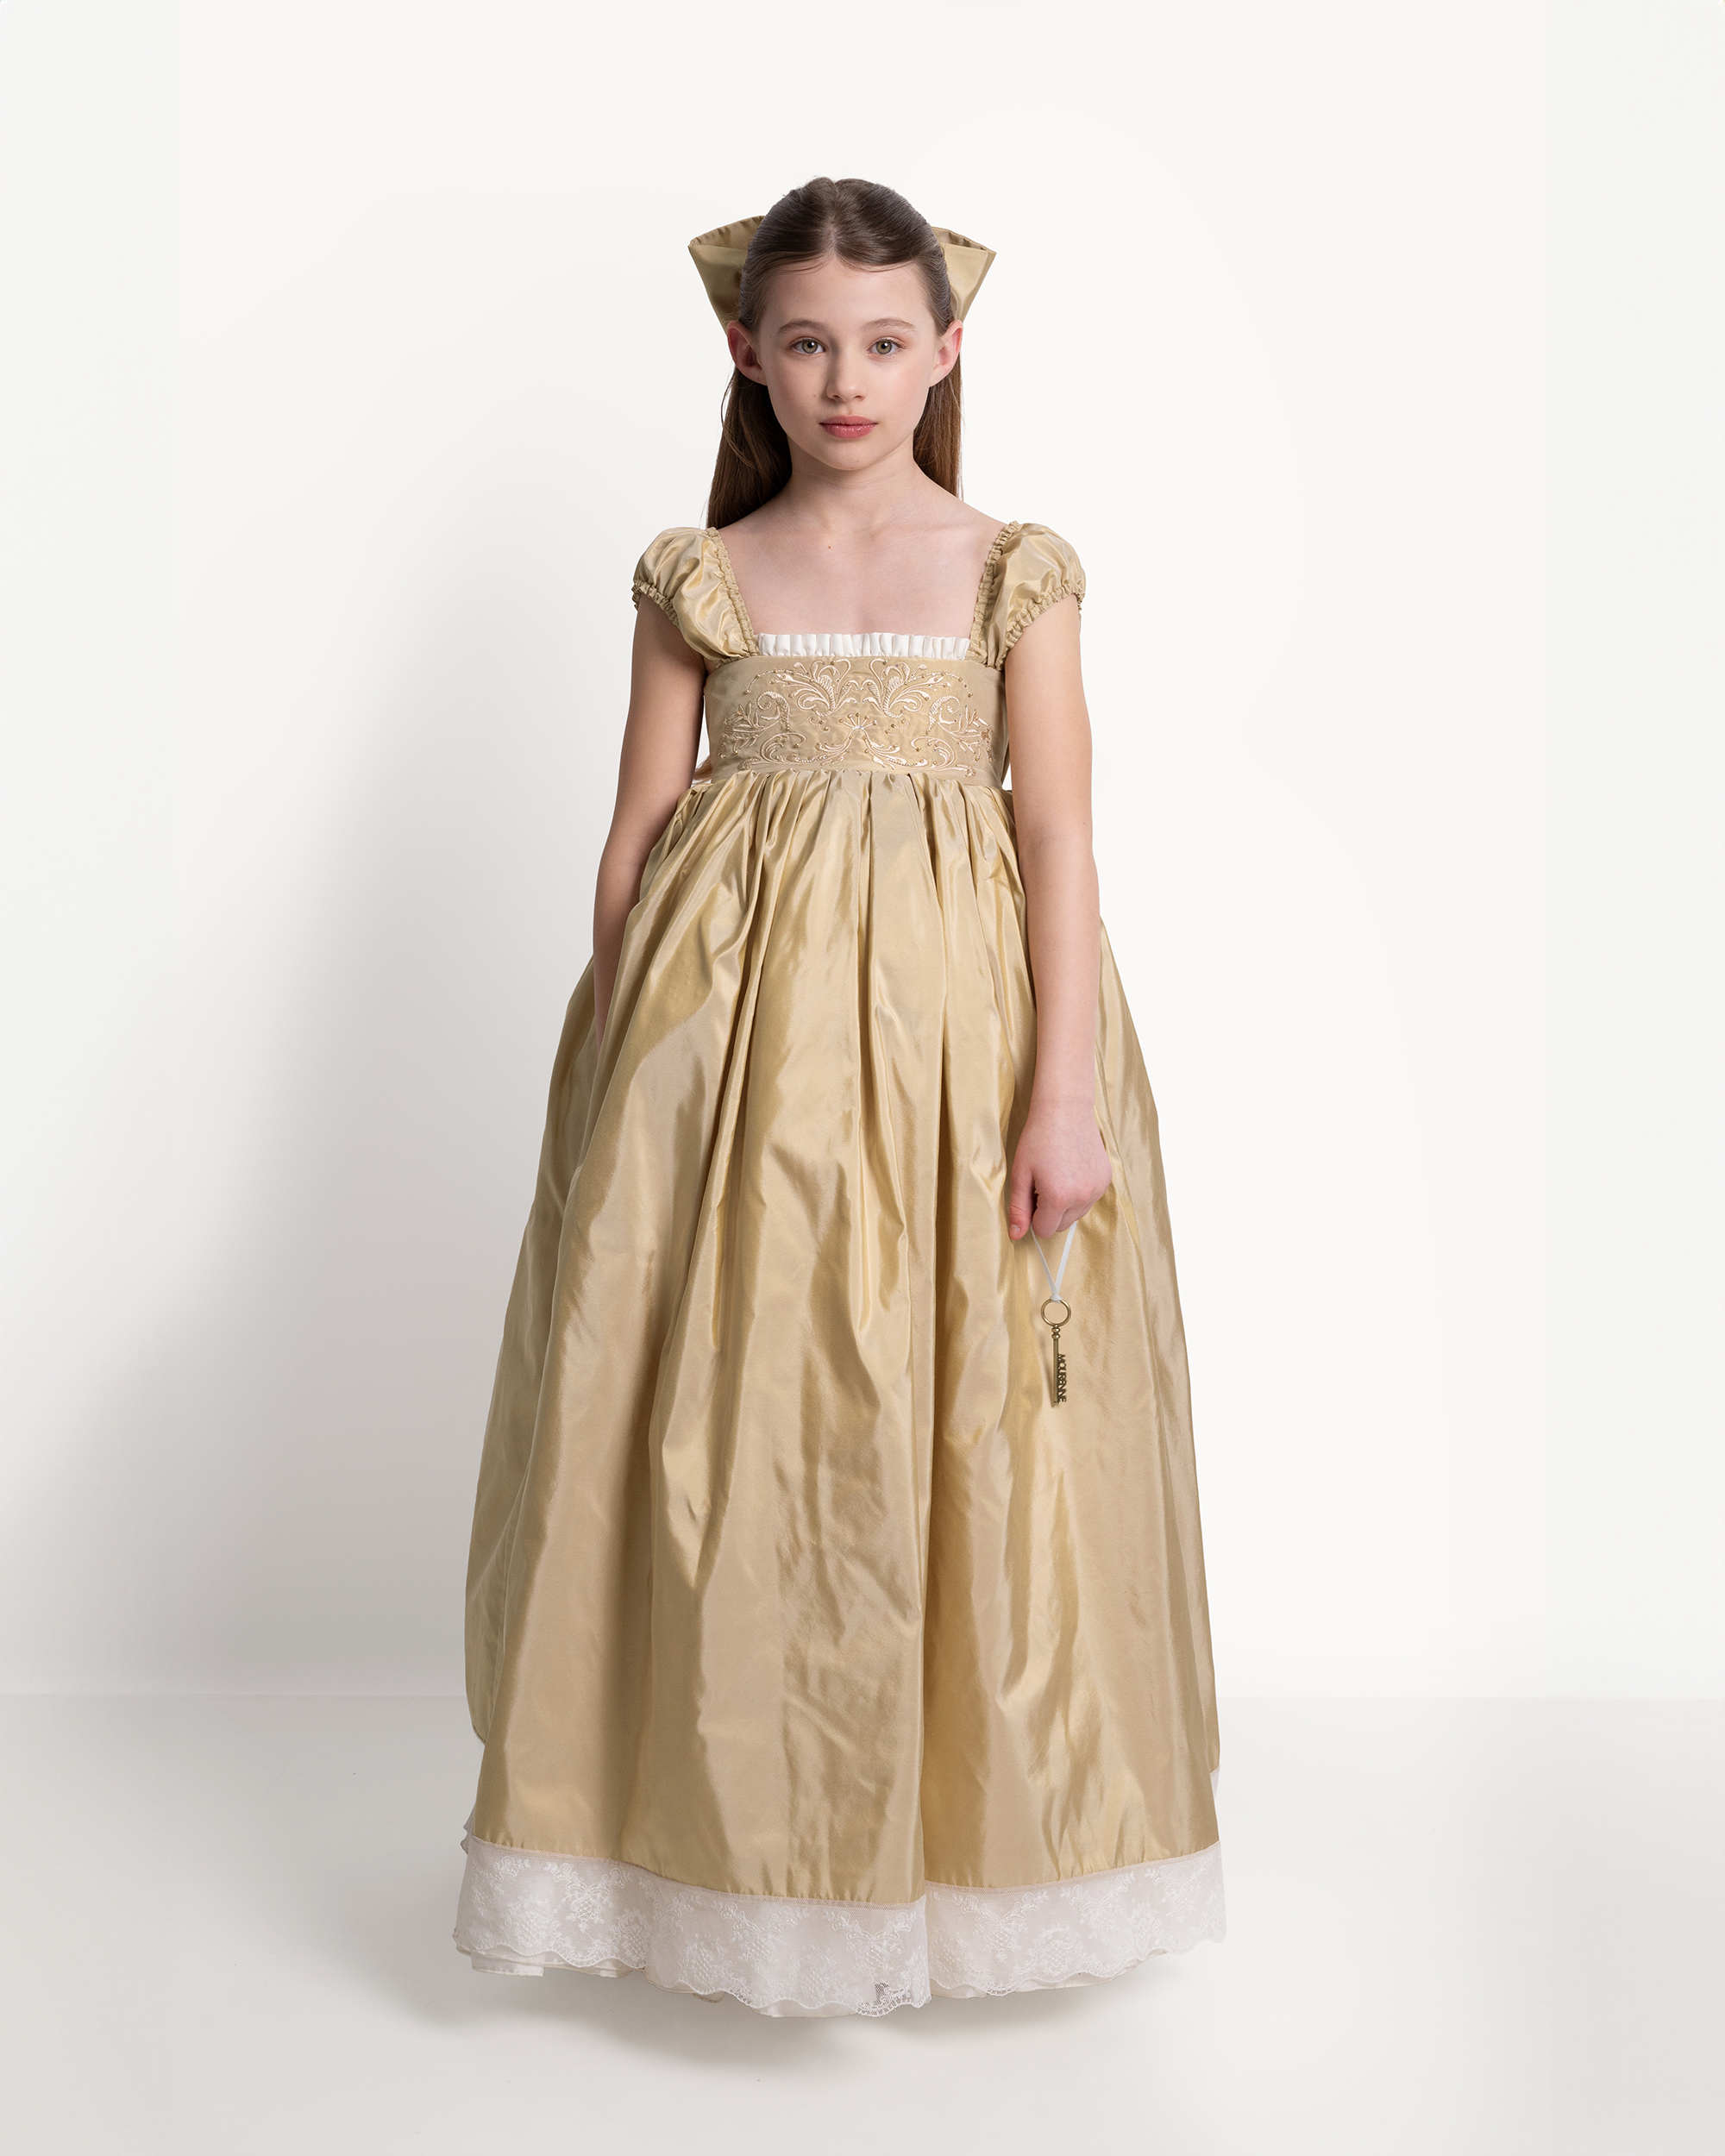 The Princess Dress in Spun Gold